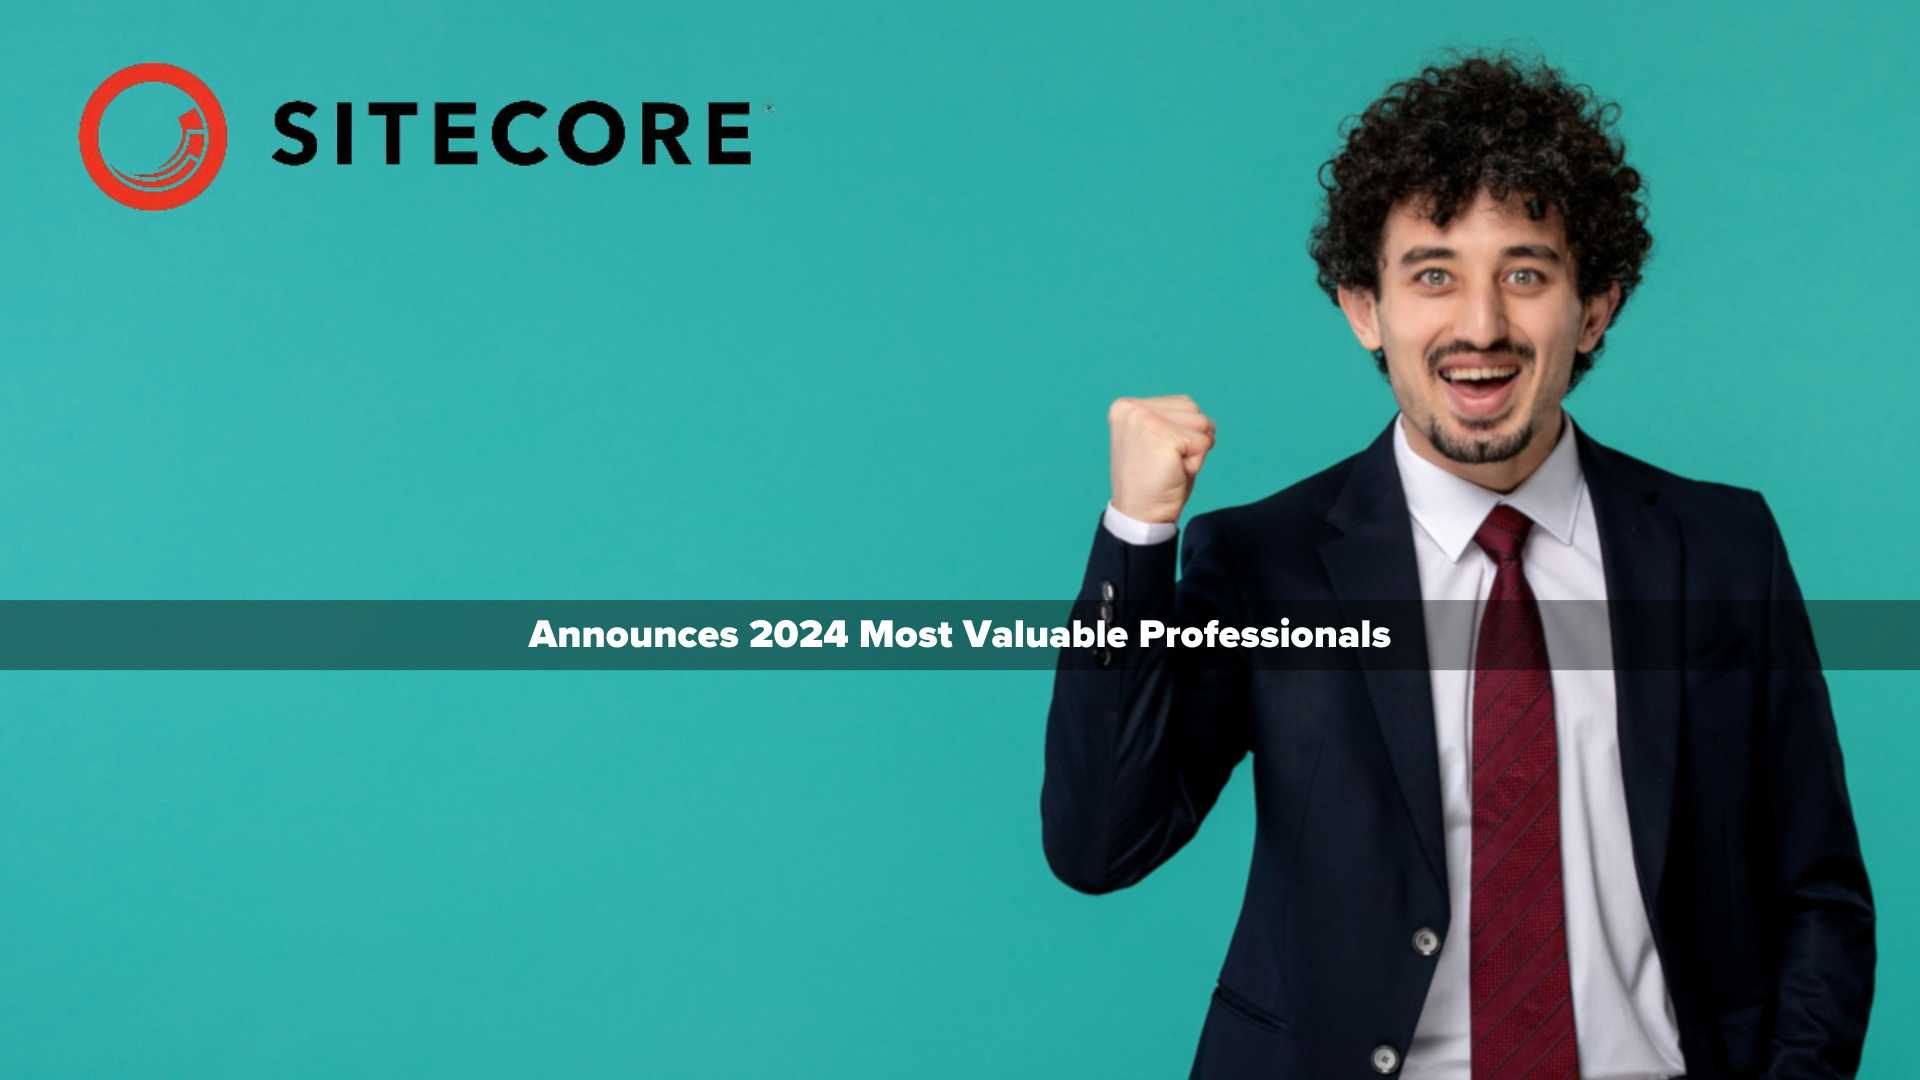 Sitecore announces 2024 Most Valuable Professionals